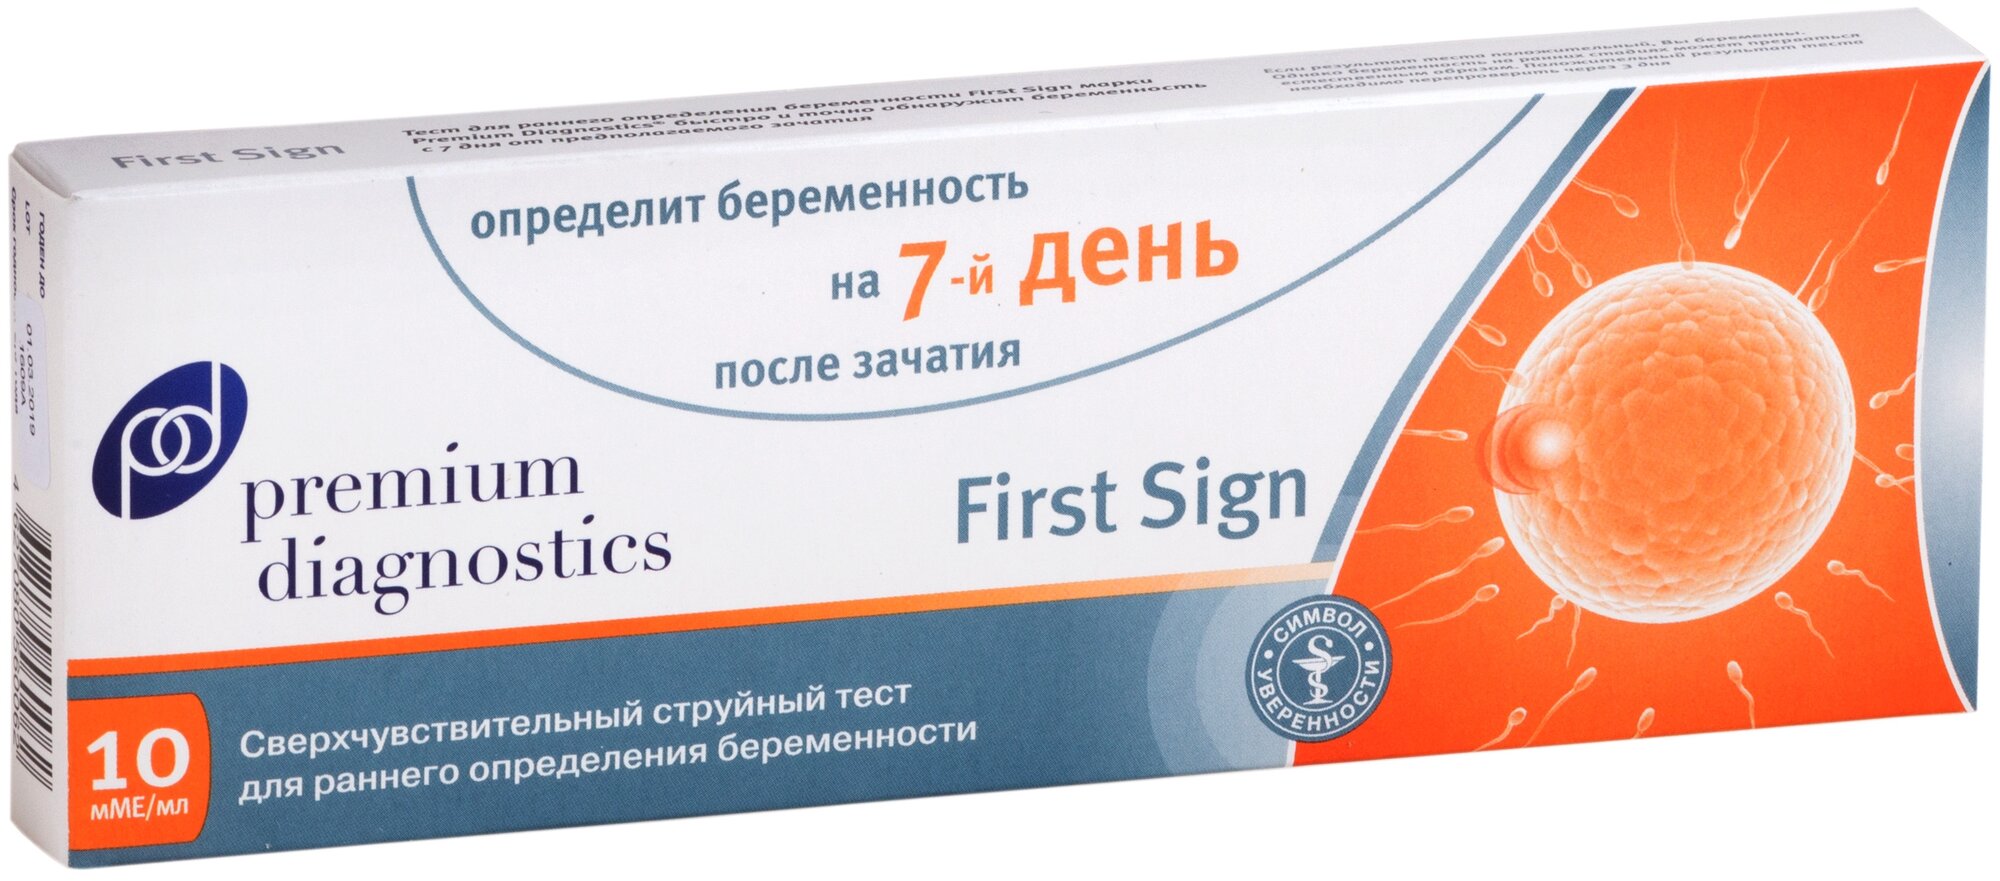 Тест Premium Diagnostics First sign для раннего определения беременности